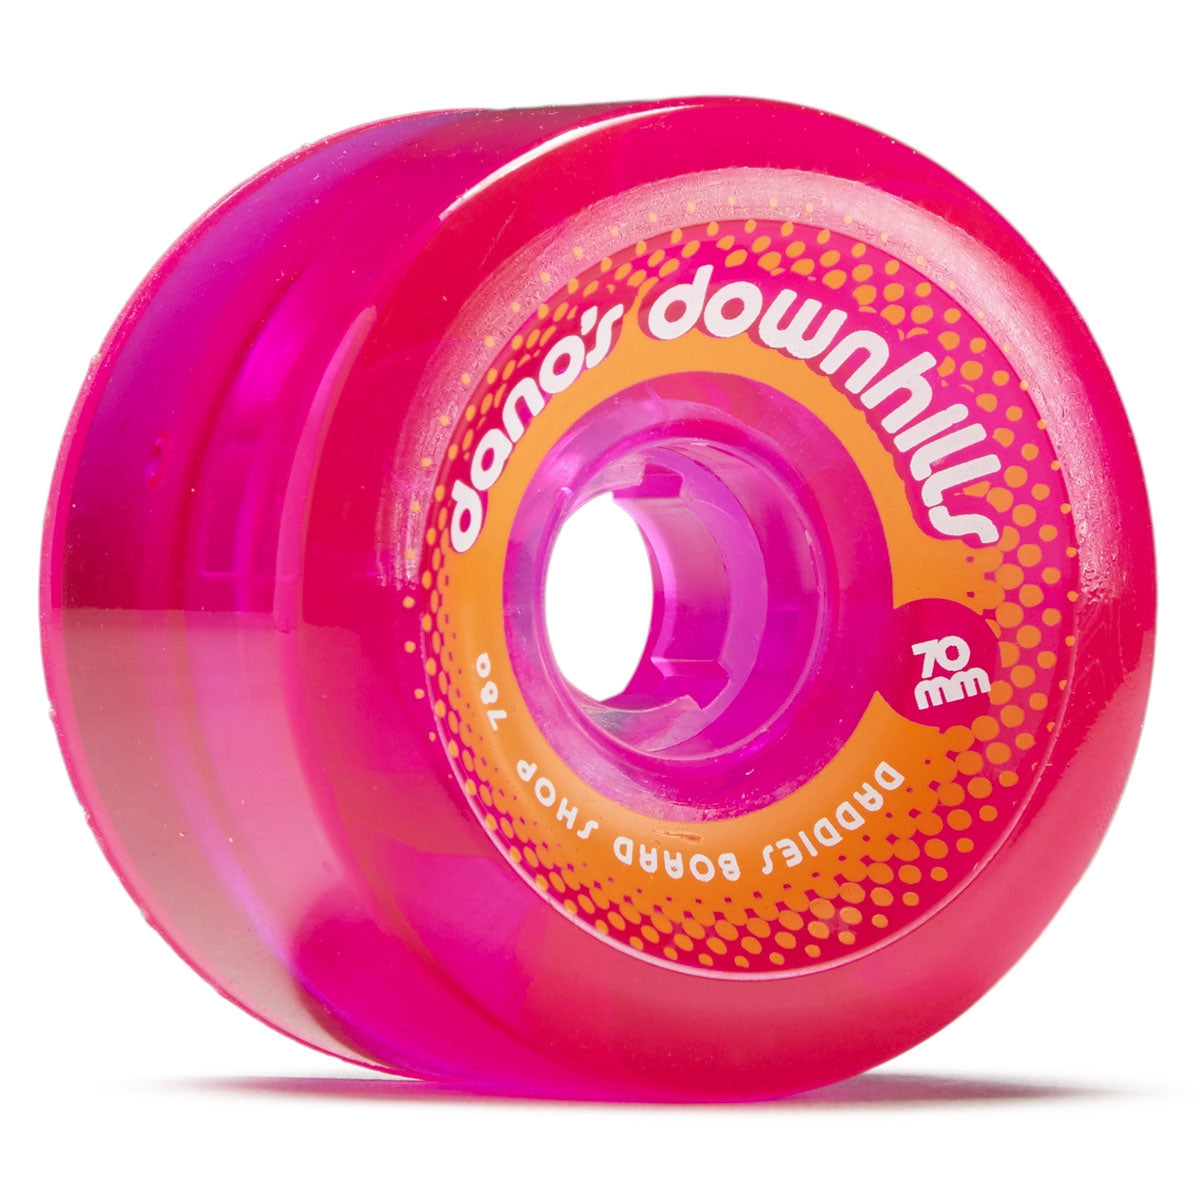 Dano's Downhills Longboard Wheels 70mm - 78a Pink Daddies Board